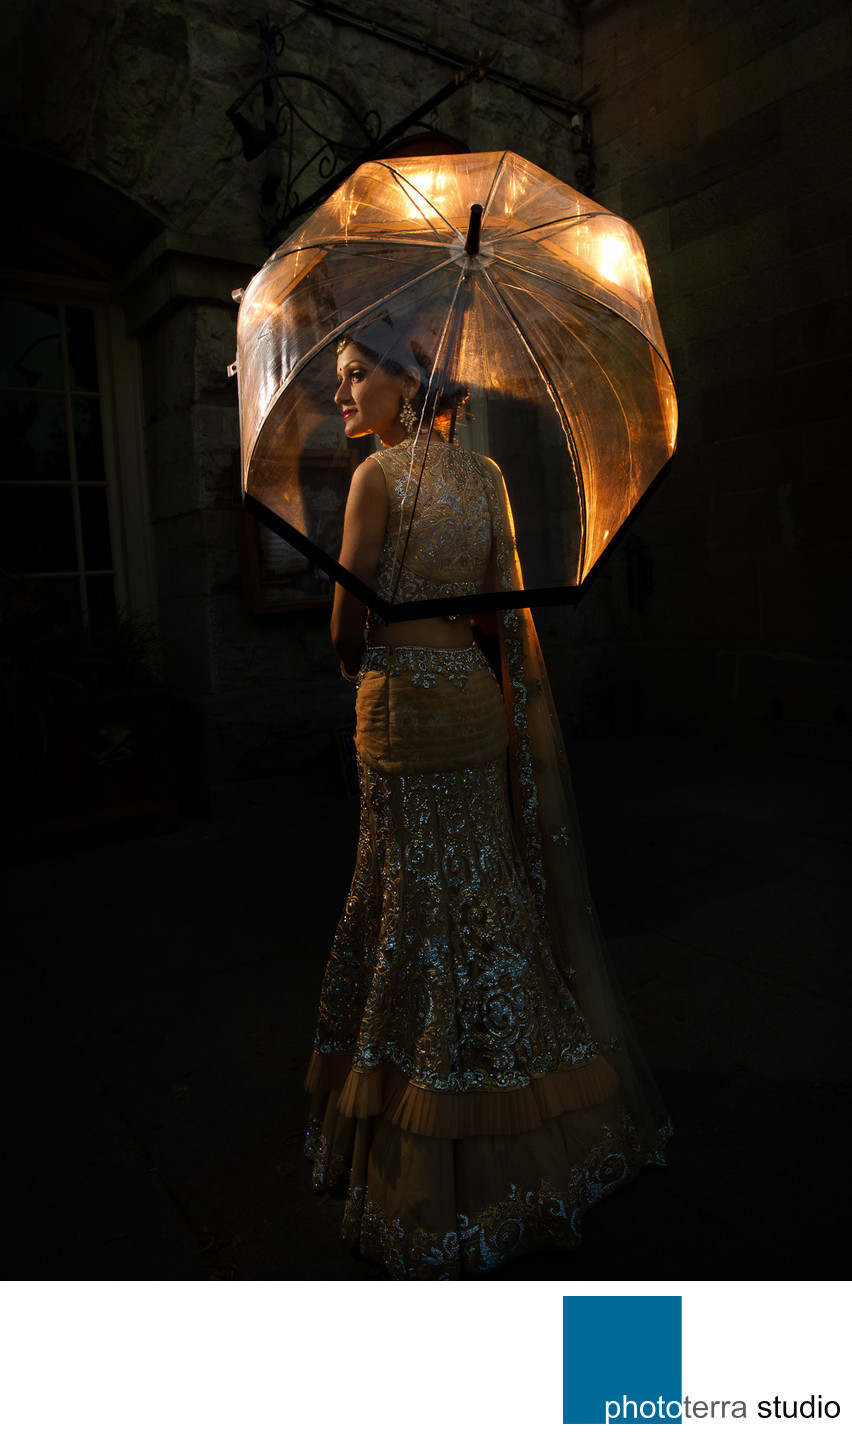 Bride with Umbrella